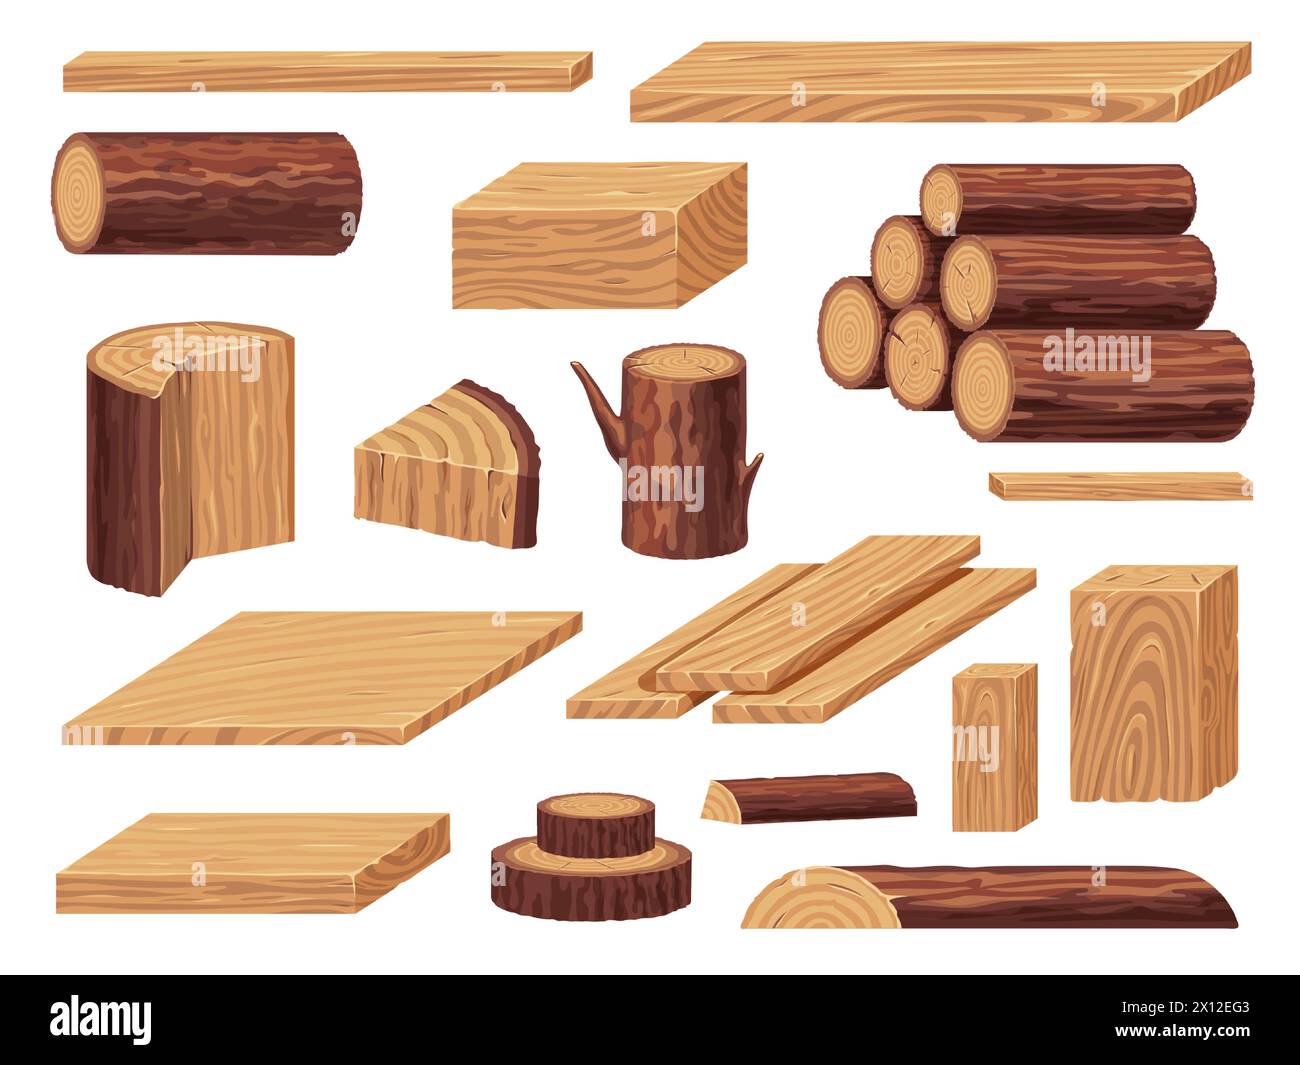 Rohholzmaterialien. Holzhaufen von Baumstämmen Äste, Haufen von geschnittenen Hartholzstücken für die Tischlerei, Sägewerksindustrie. Vektor-isolierter Satz Stock Vektor